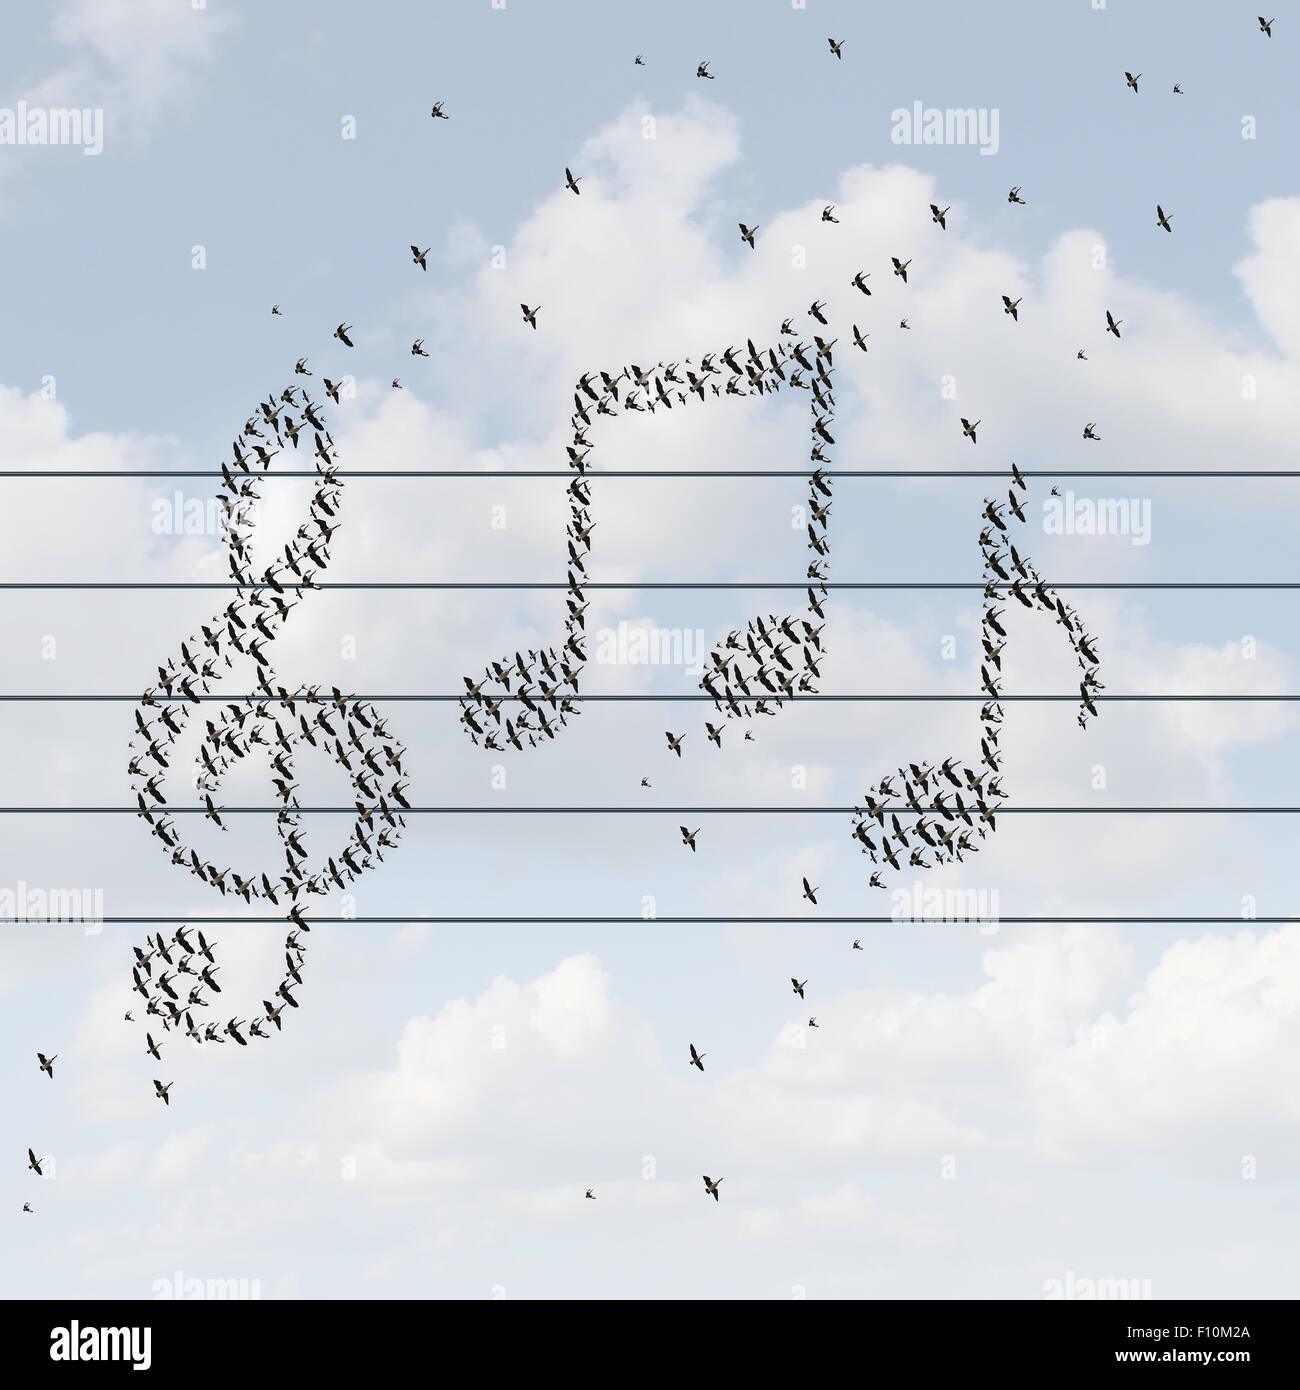 Concepto de música grabada y símbolo de distribución multimedia como pájaros volando juntos en forma de notas musicales como una metáfora para disfrutar de una melodía o distribución de canciones en Internet o en la radio con una línea de servicio inalámbrico. Foto de stock